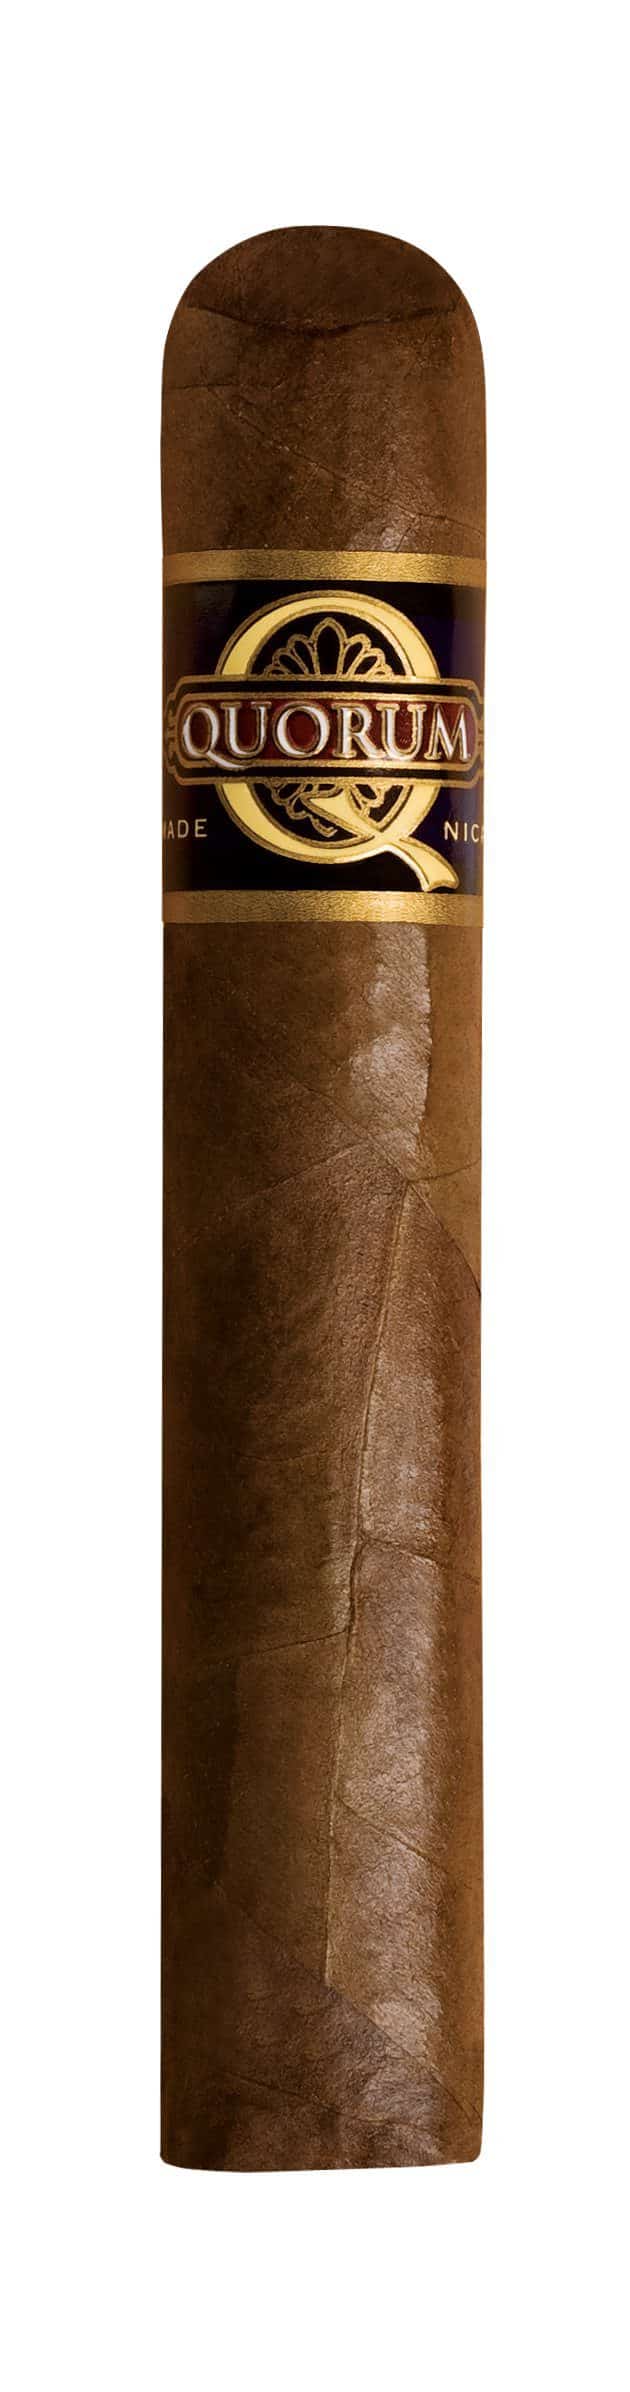 quorum robusto single cigar